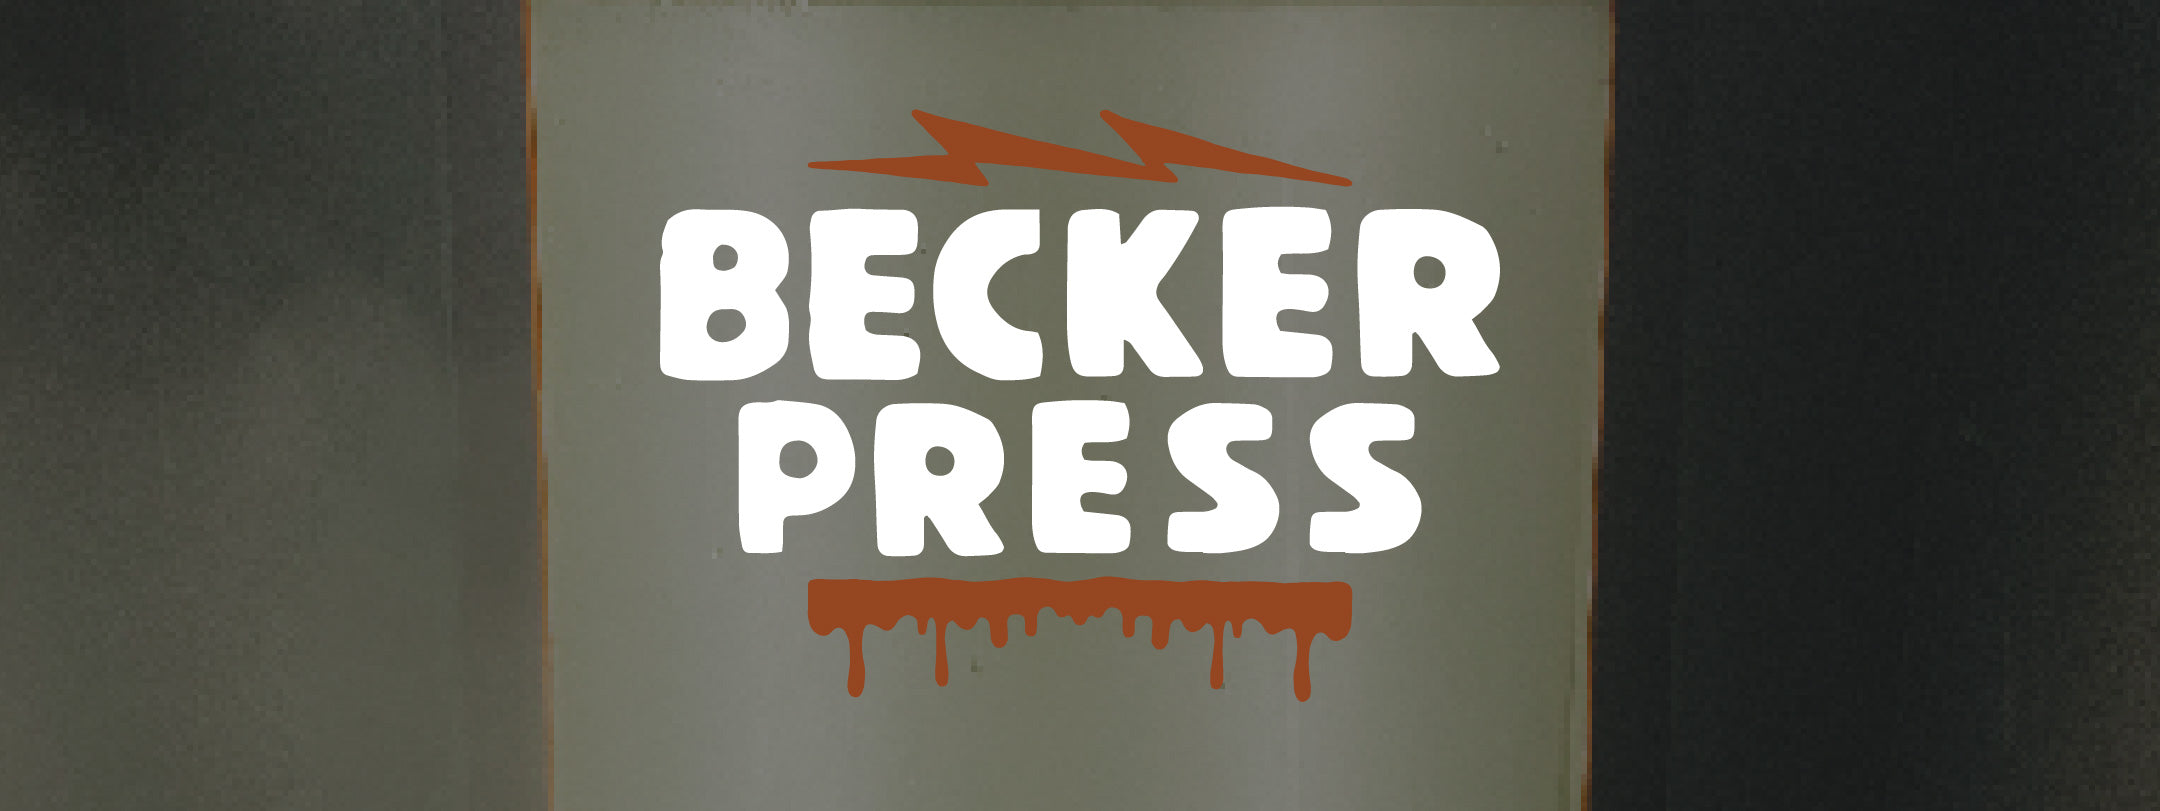 Becker Press Header